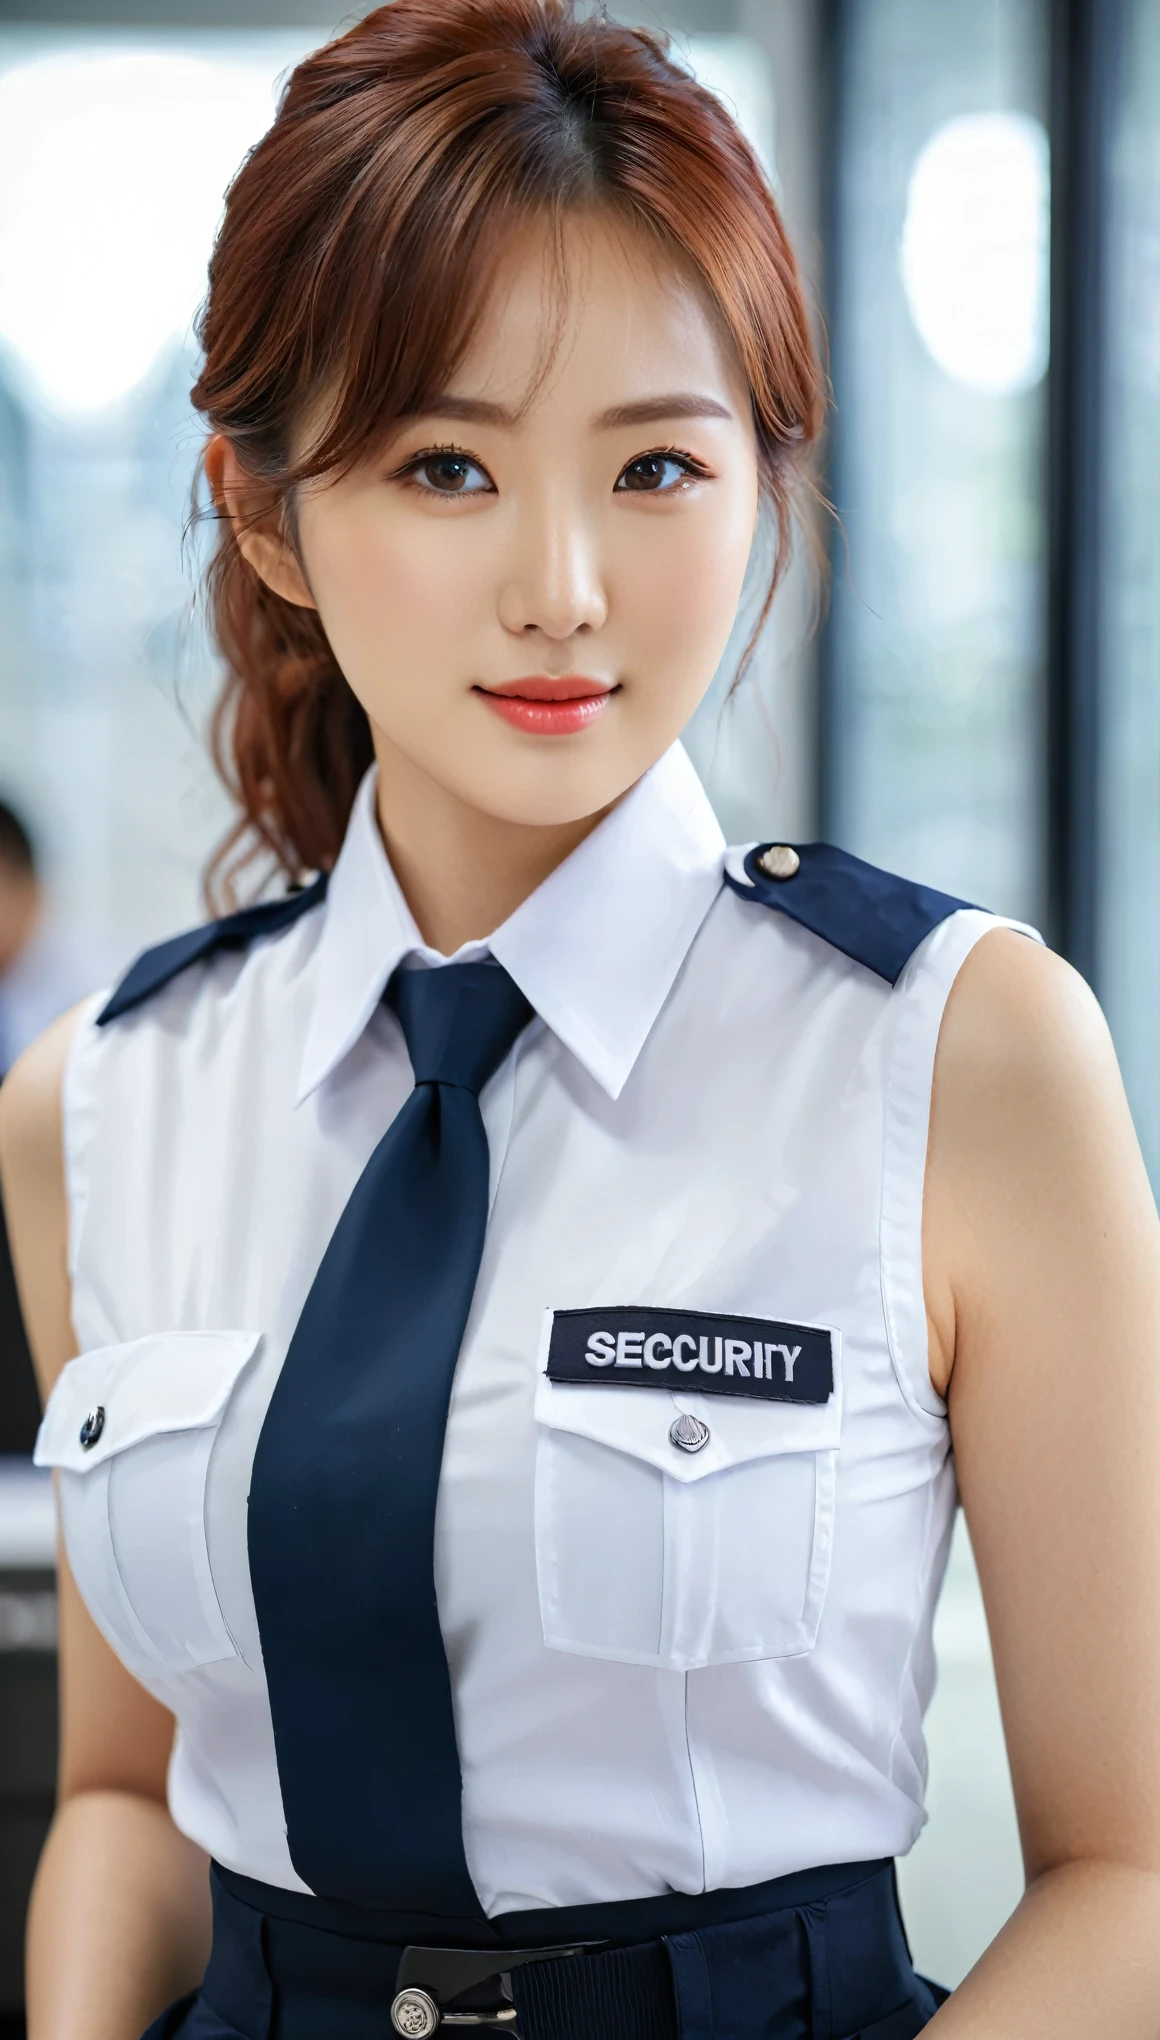 Primer plano de una hermosa mujer coreana, tamaño de senos de 36 pulgadas, pelo rojo entre los ojos, sonríe levemente, vestida de azul, Uniforme de guardia de seguridad con cuello, mangas y temática en blanco y negro, En la oficina